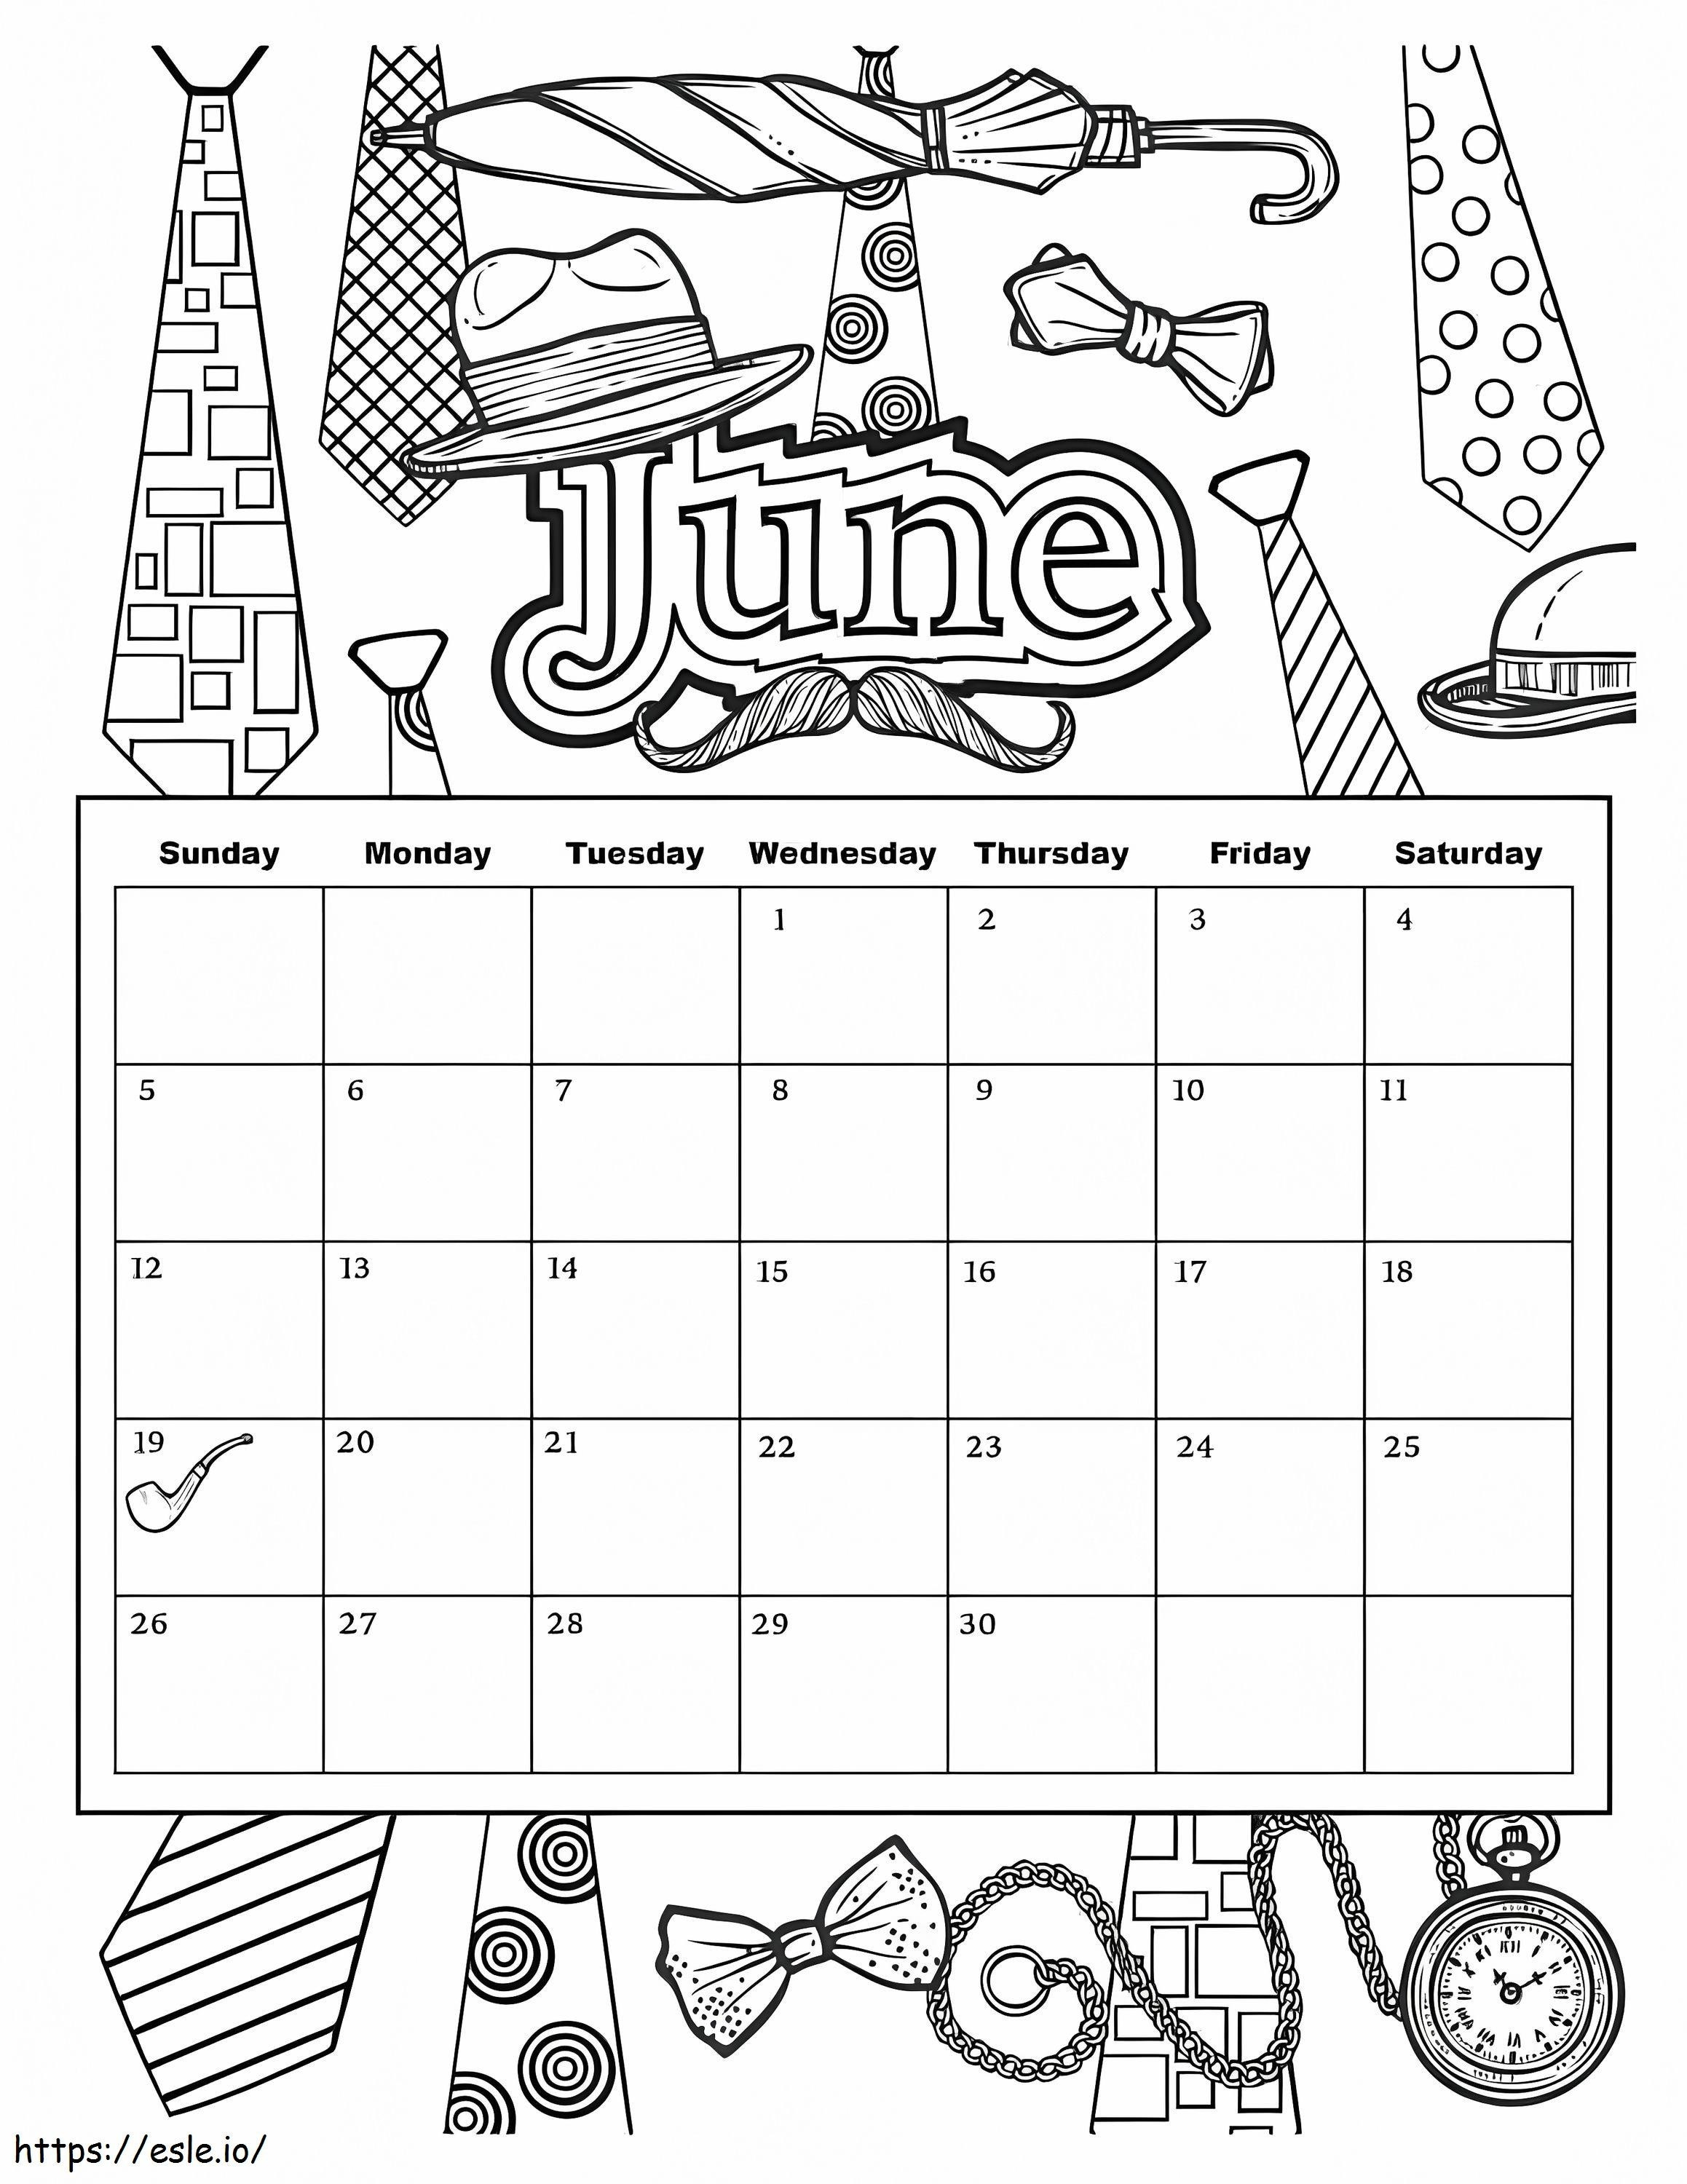 Calendarul lunii iunie de colorat